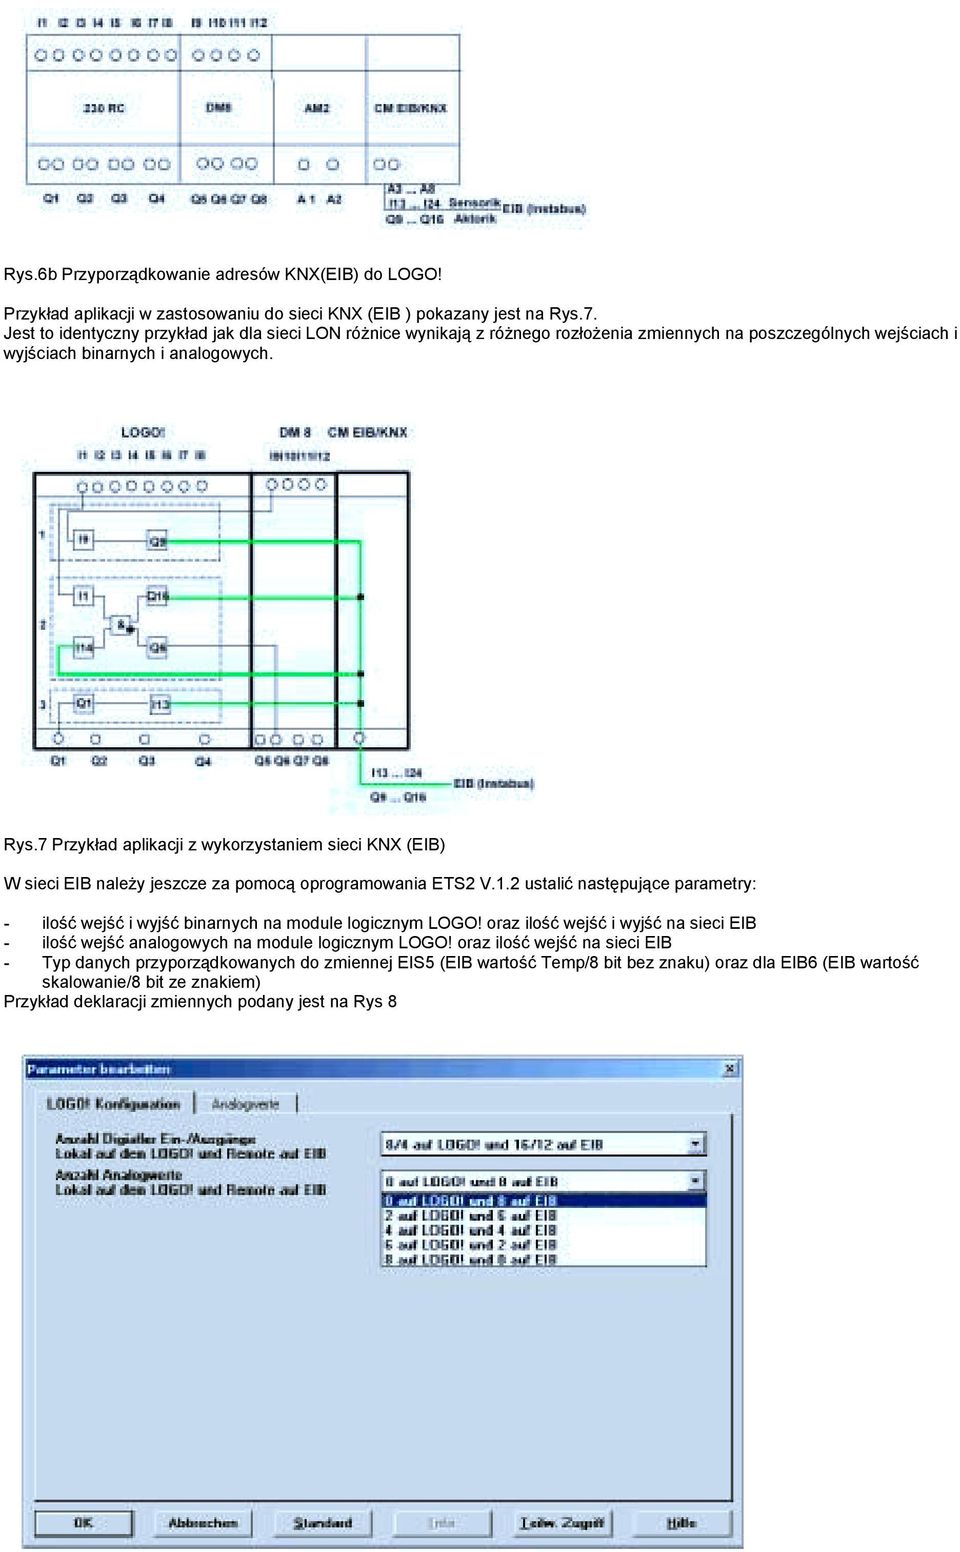 7 Przykład aplikacji z wykorzystaniem sieci KNX (EIB) W sieci EIB należy jeszcze za pomocą oprogramowania ETS2 V.1.